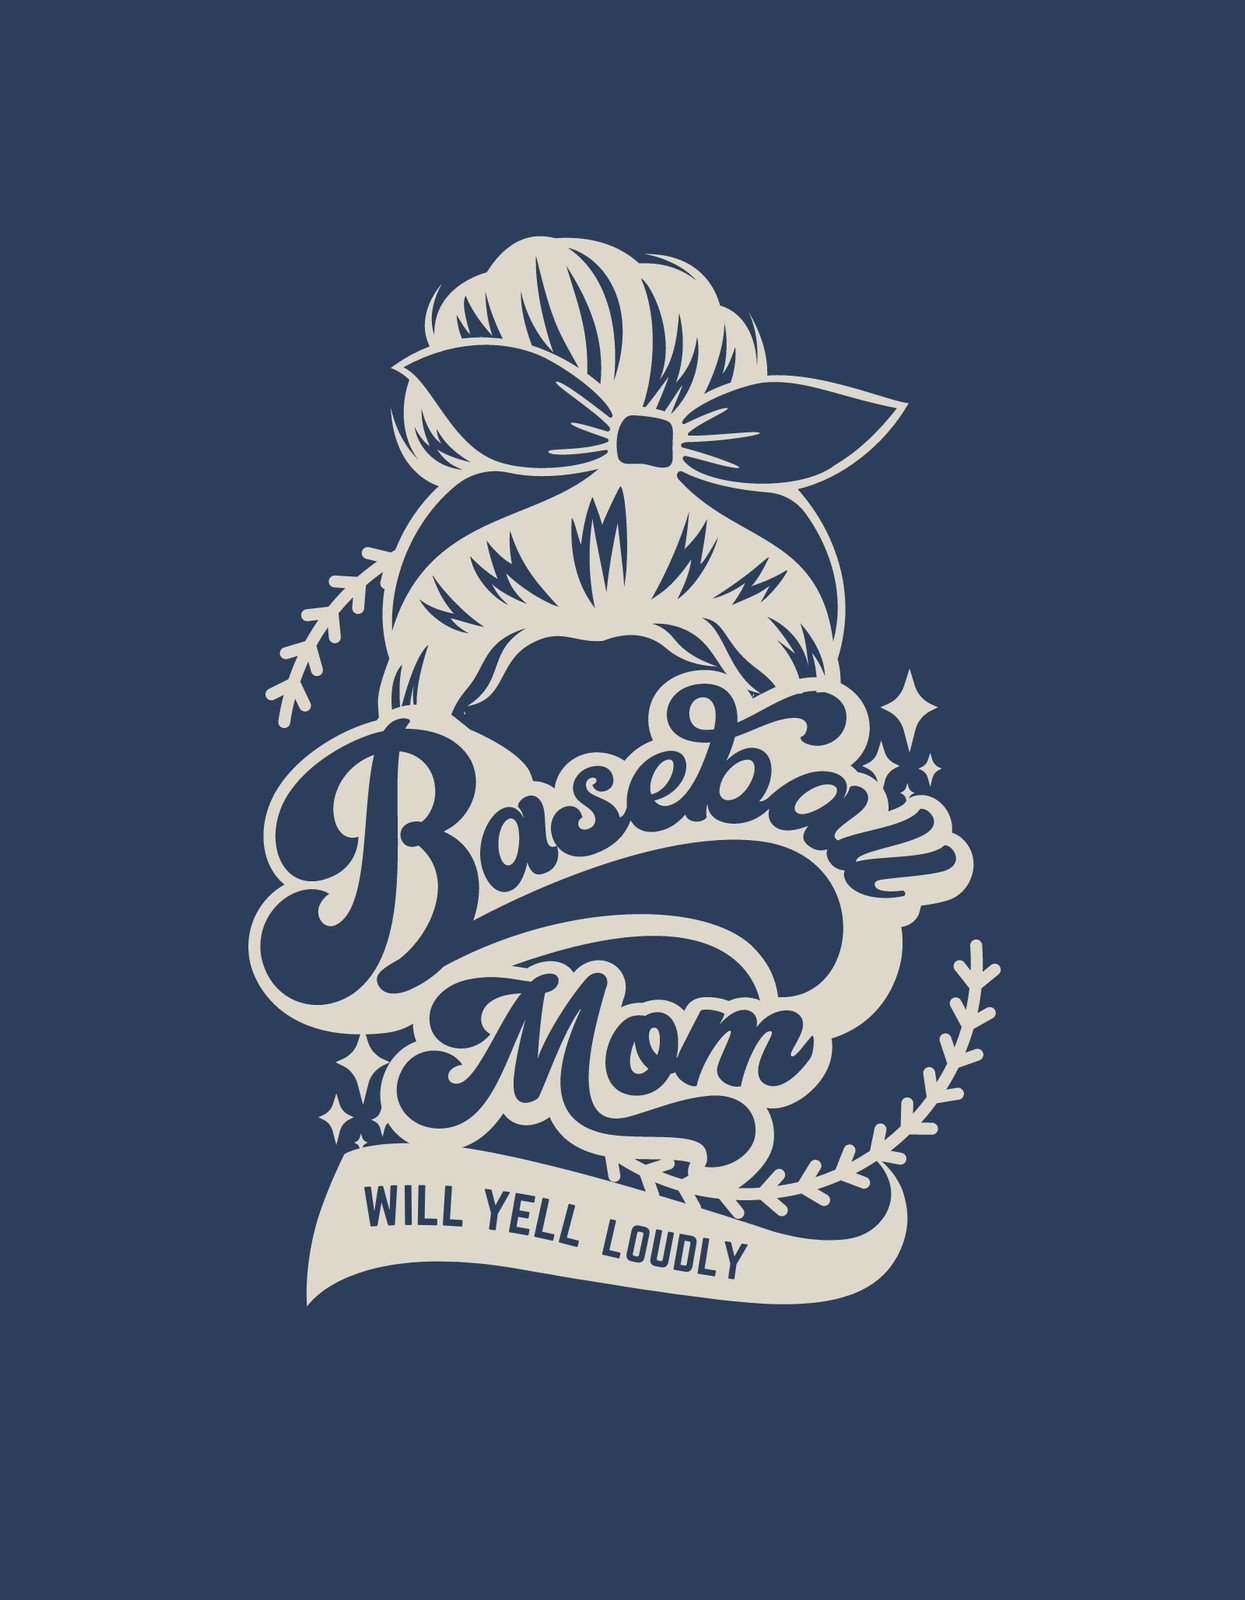 Premium Vector  Baseball grandma t shirt design template